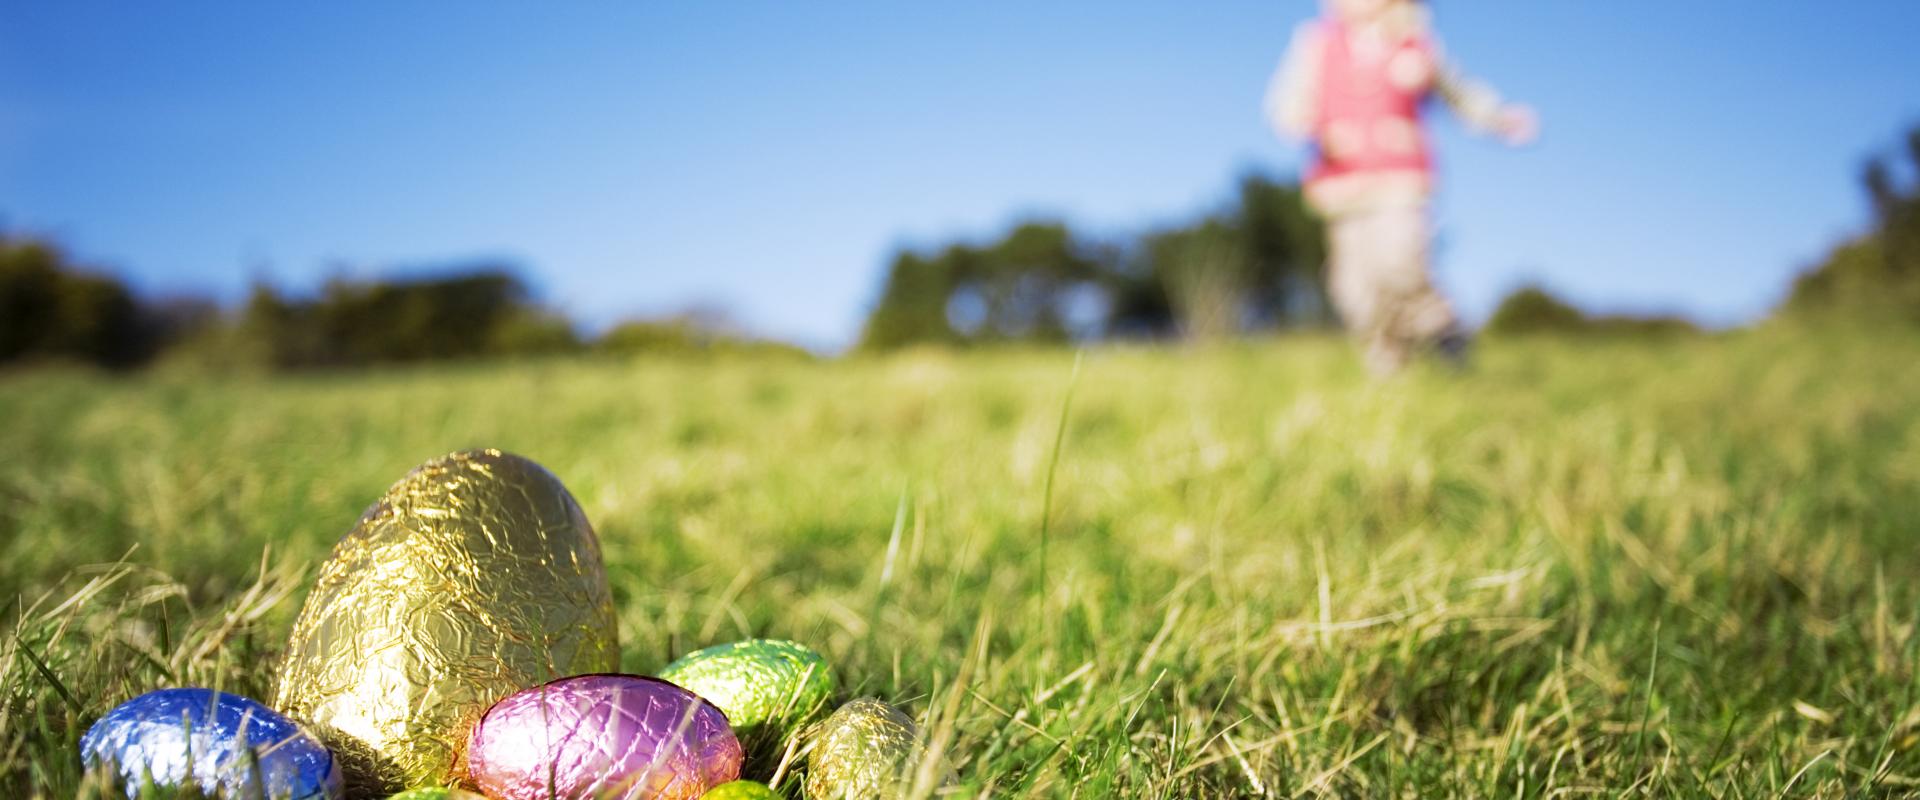 Wyau Pasg yn cuddio yn y glaswellt / Easter eggs hiding in the grass